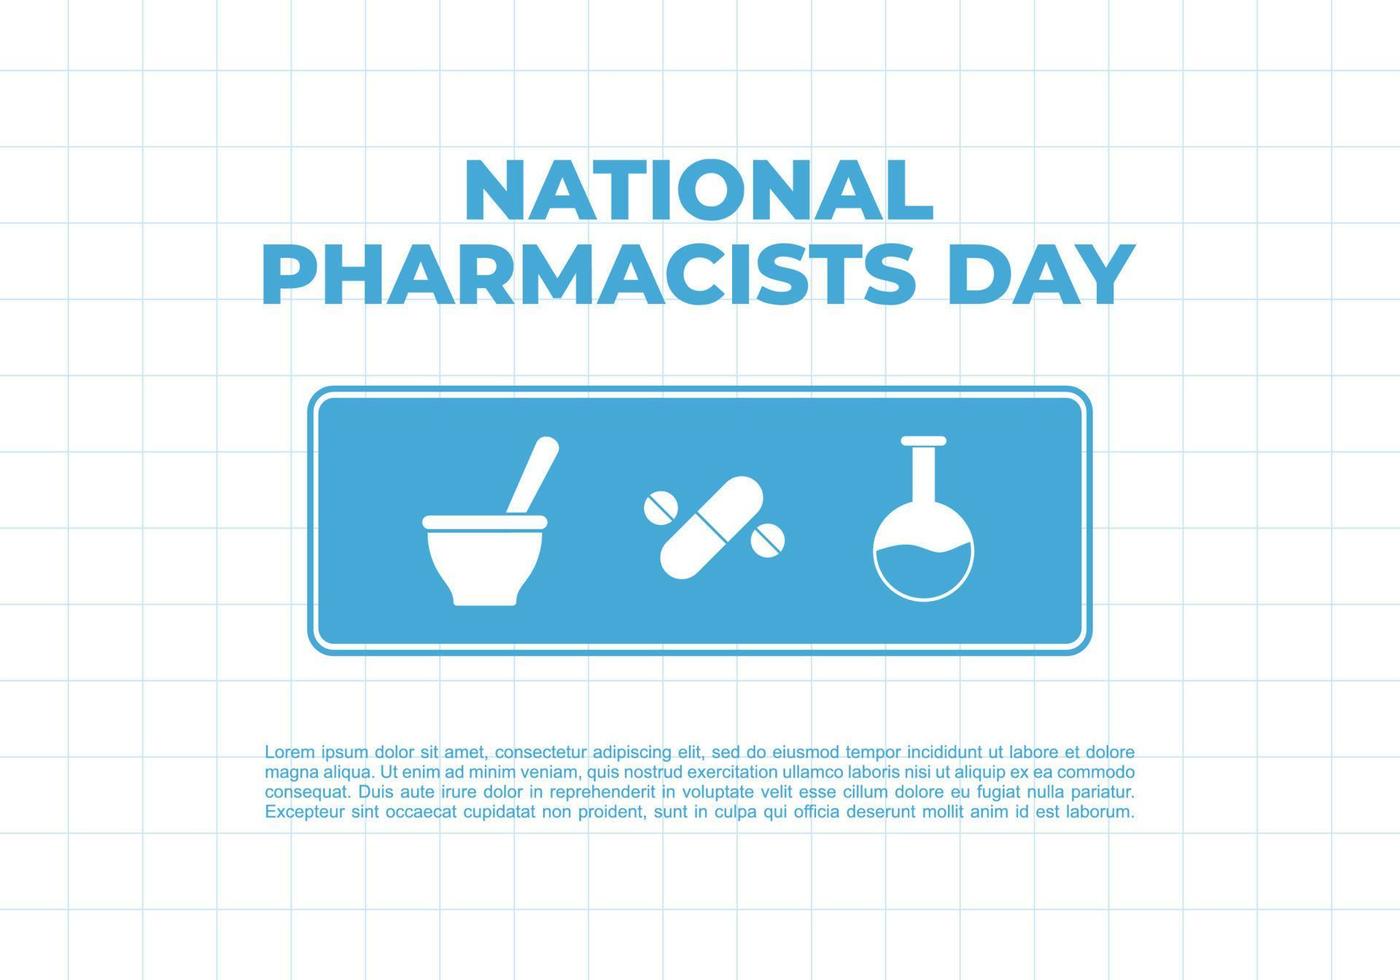 dia nacional do farmacêutico isolado no fundo branco comemorado em 12 de janeiro vetor